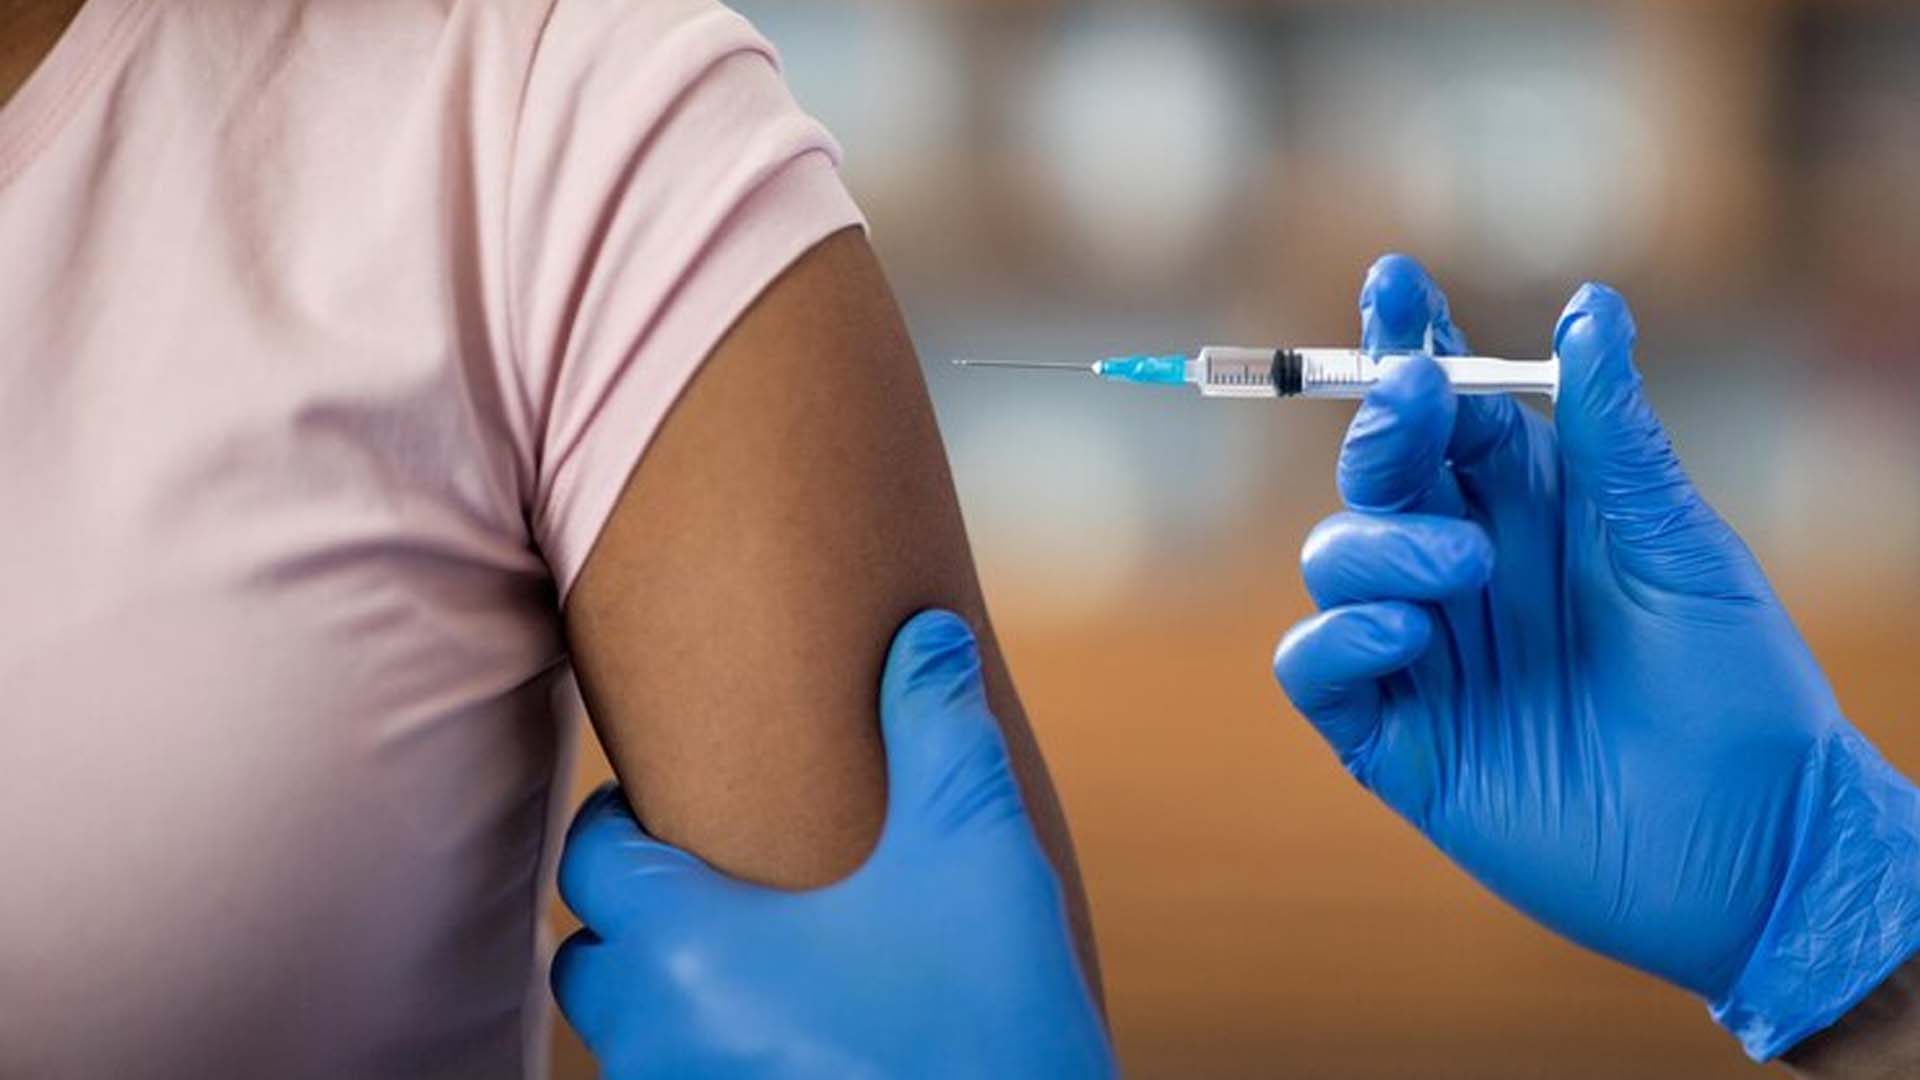 Pertussis Vaccine